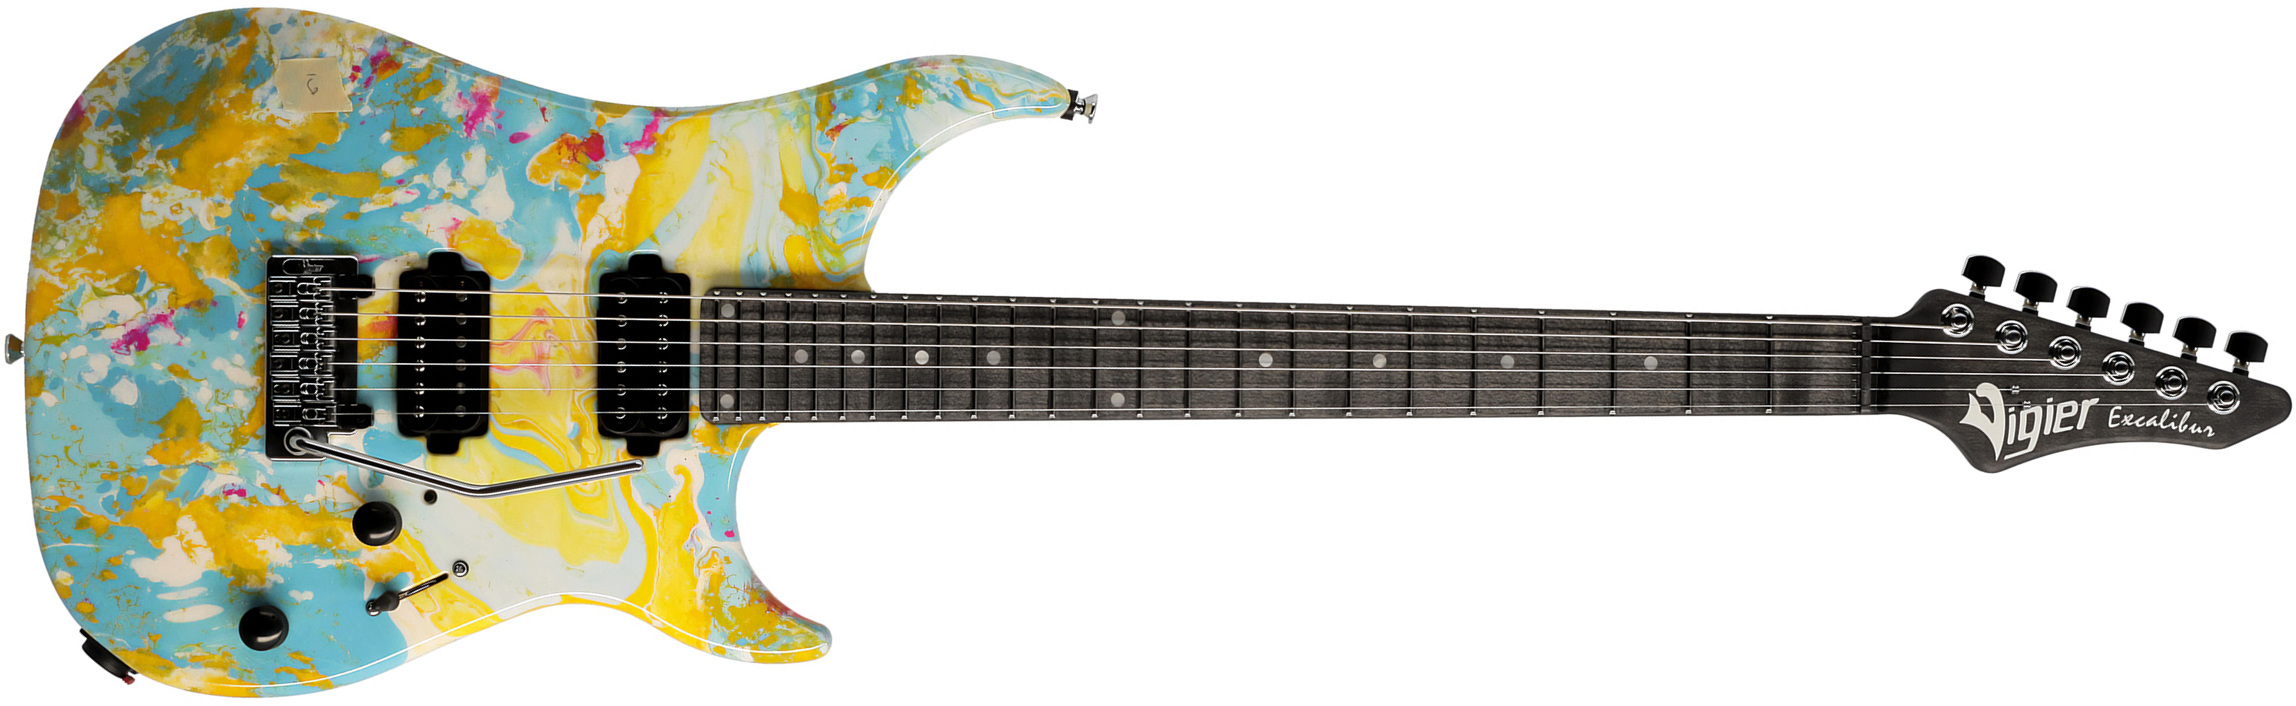 Vigier Excalibur Thirteen 2h Trem Mn - Rock Art Yellow Blue White - Str shape electric guitar - Main picture